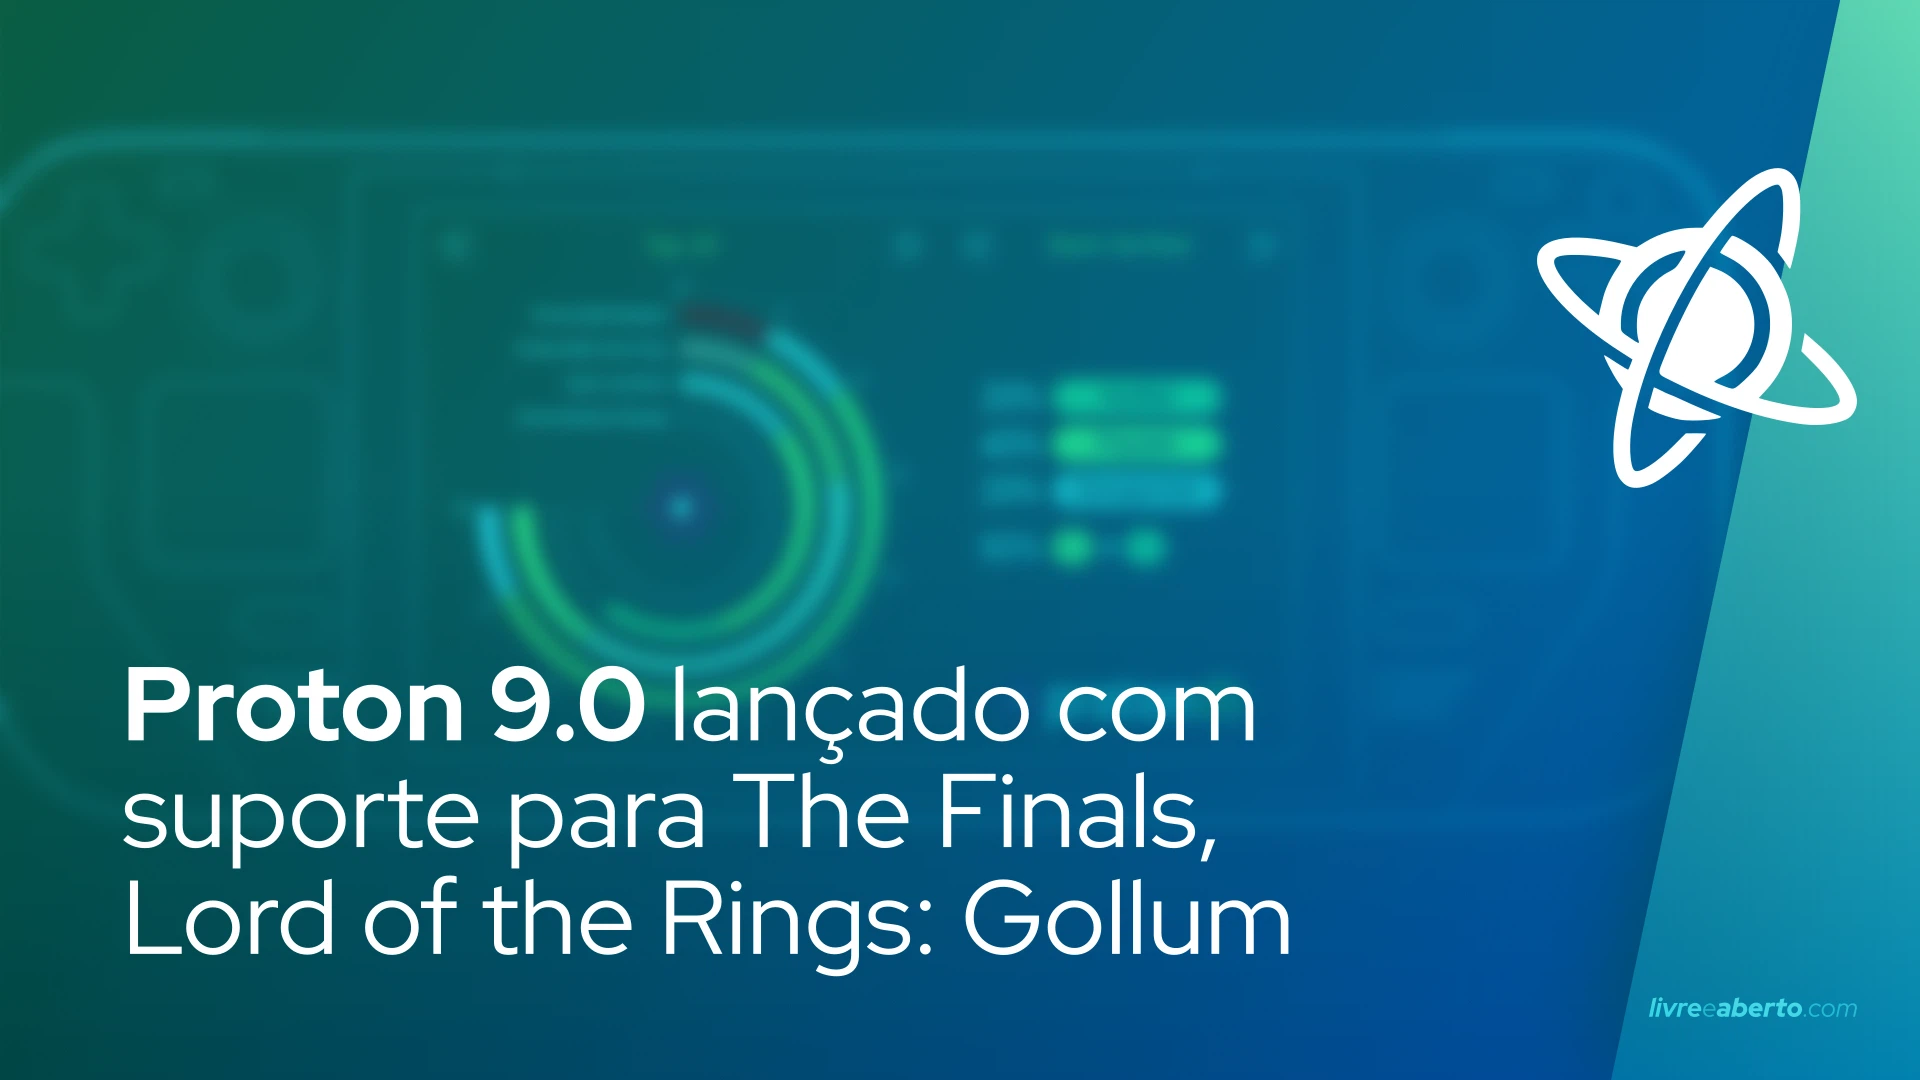 Proton 9.0 lançado com suporte para The Finals, Lord of the Rings: Gollum